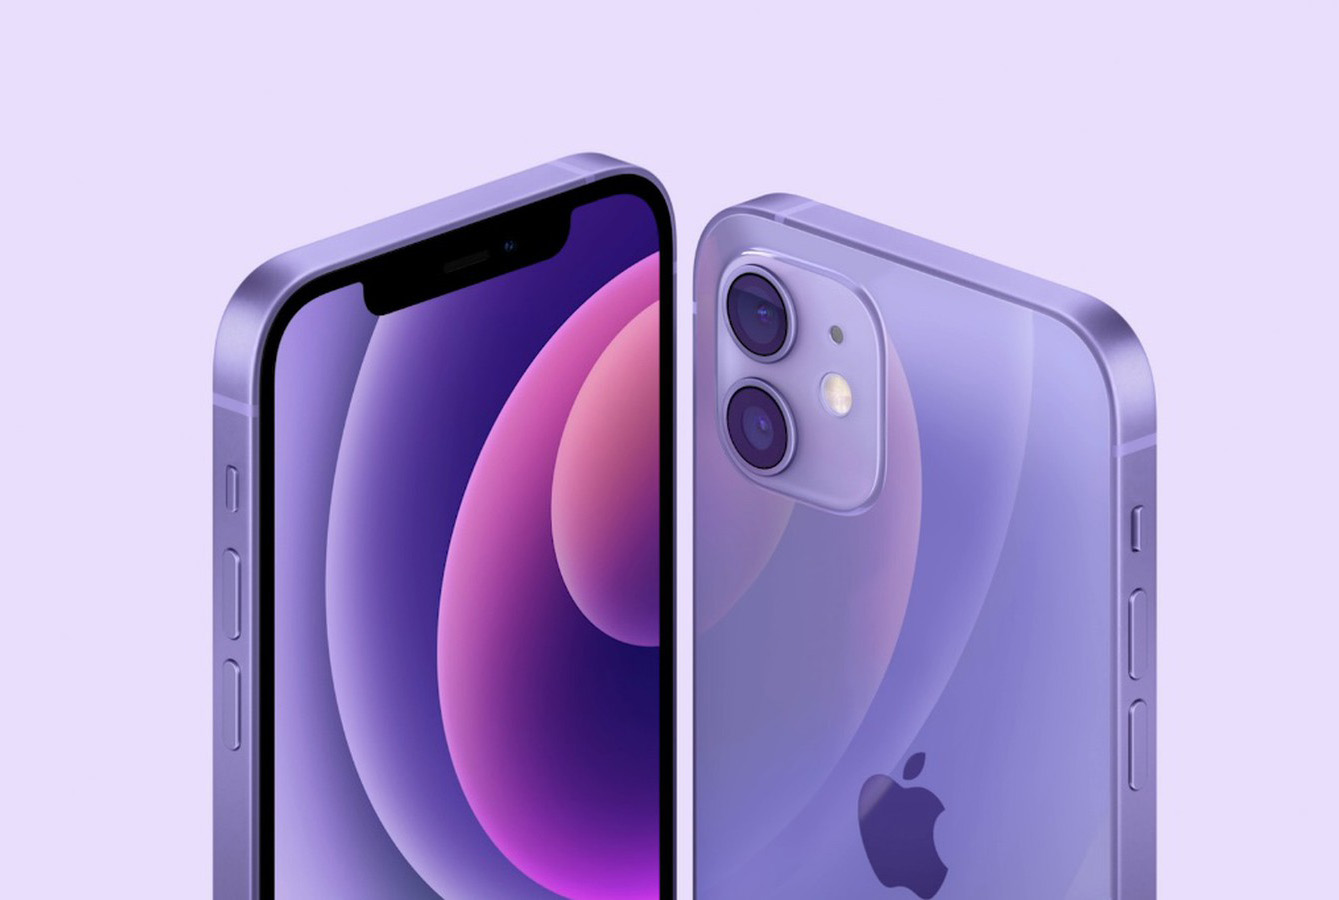 紫色 iPhone 12 改用隨機序號：山寨造假更困難